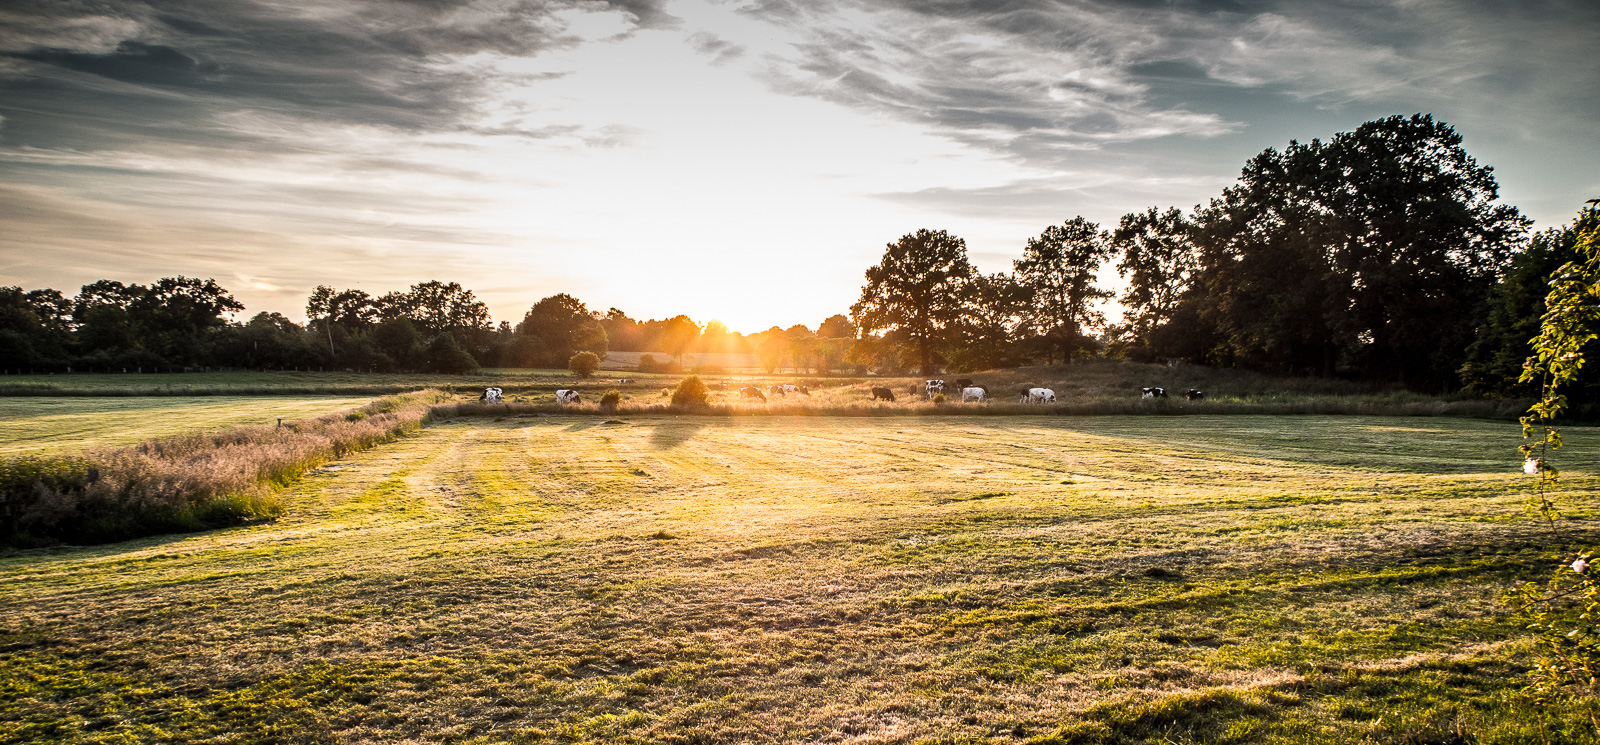 Sonnenuntergang über dem Feld, mit ein paar Kühen und dramatischem Verlaufsfilter für die Wolken